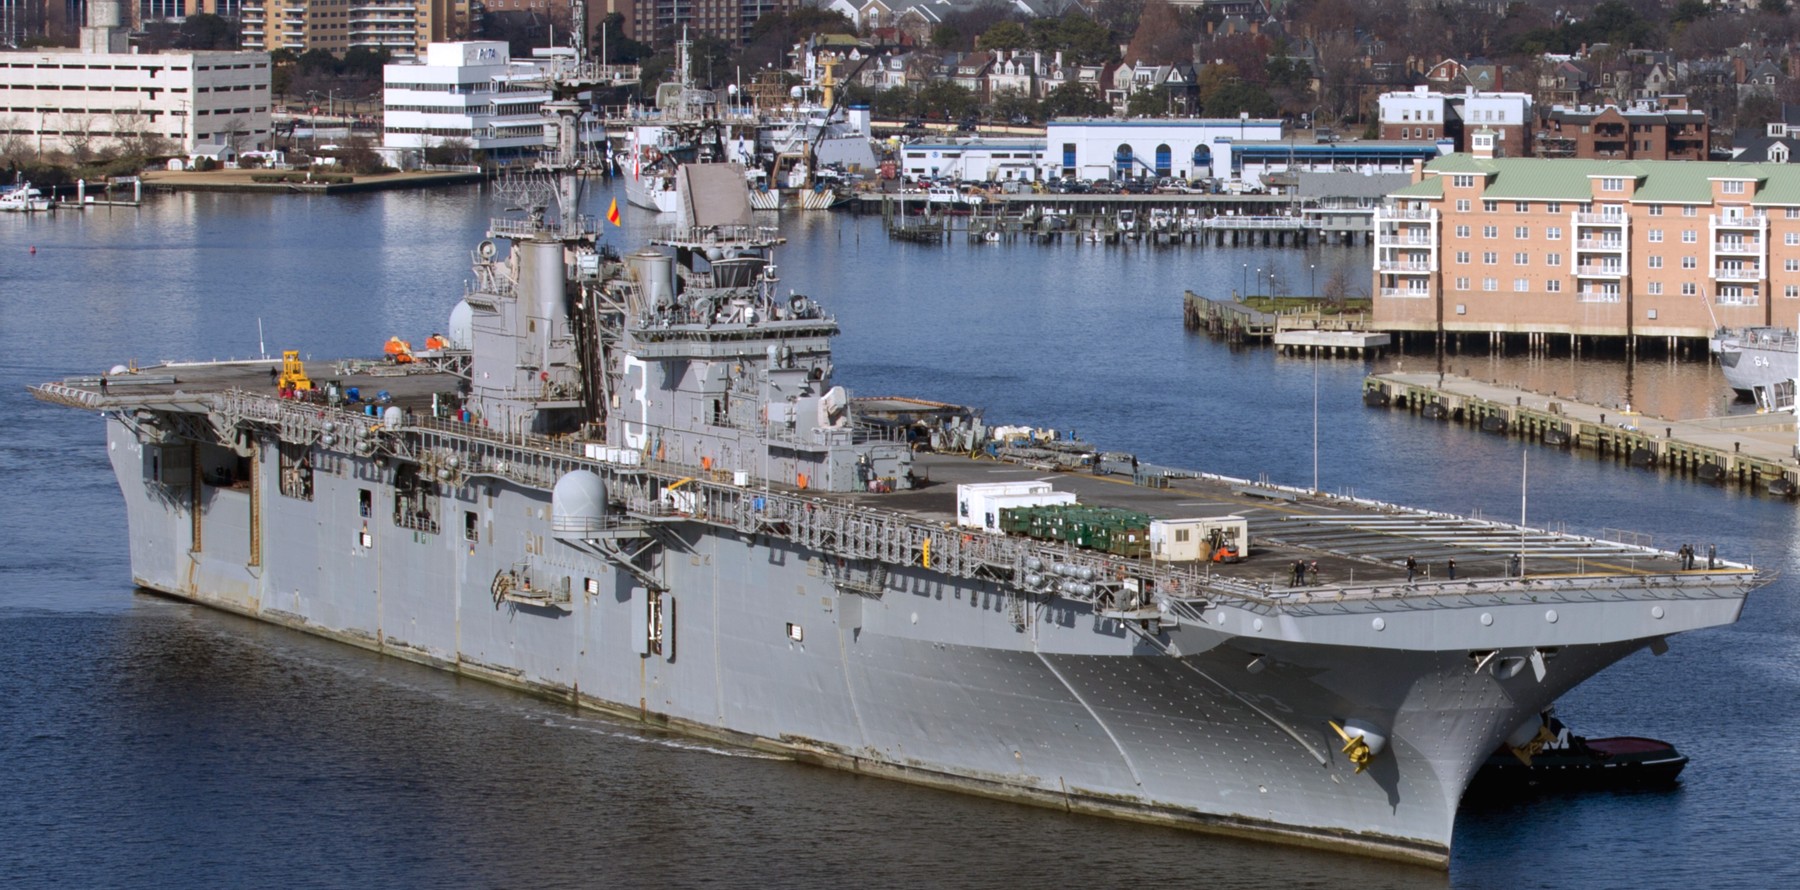 lhd-3 uss kearsarge wasp class amphibious assault ship landing dock us navy 139